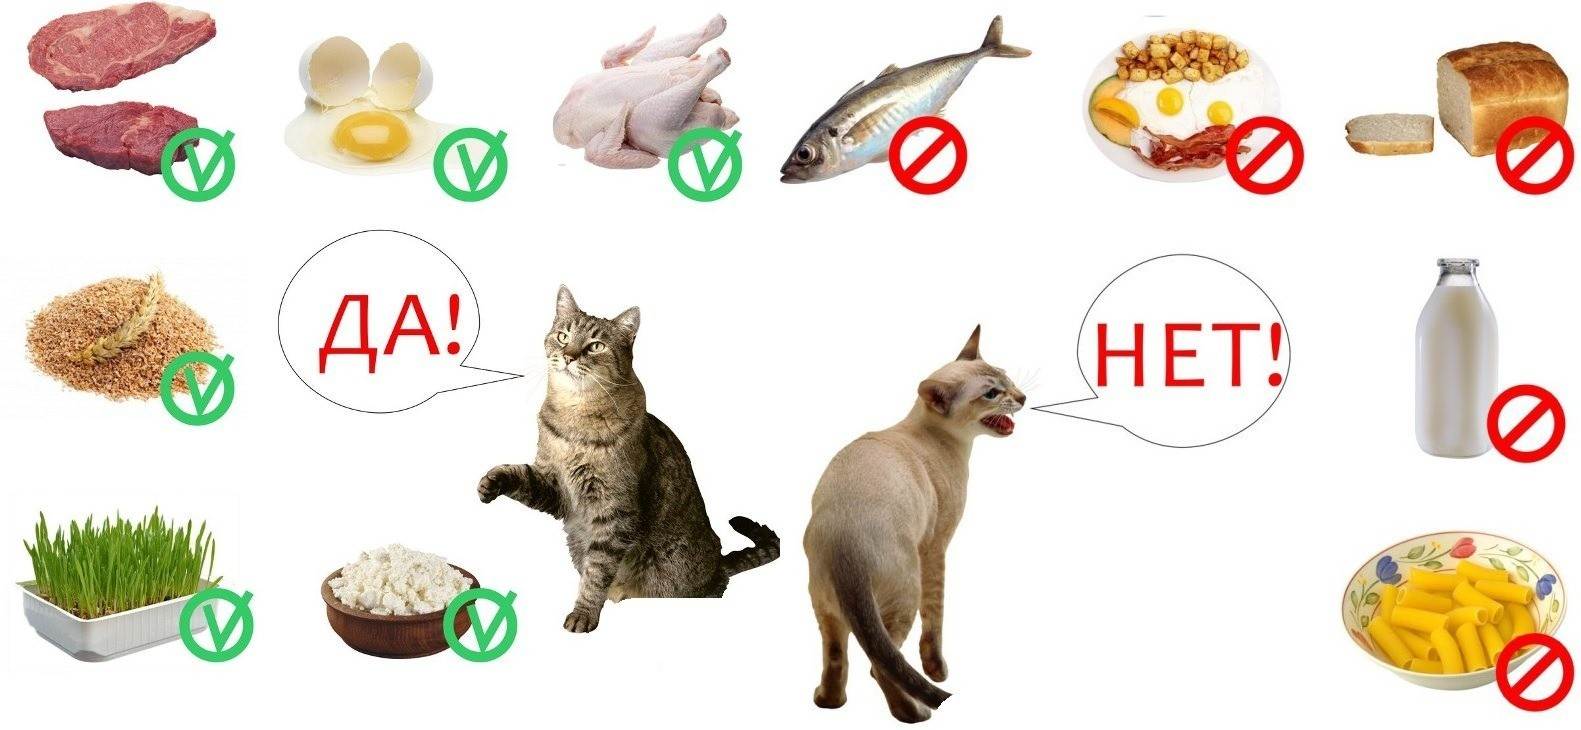 Сравнение кормов для кошек по составу при помощи таблиц и анализаторов